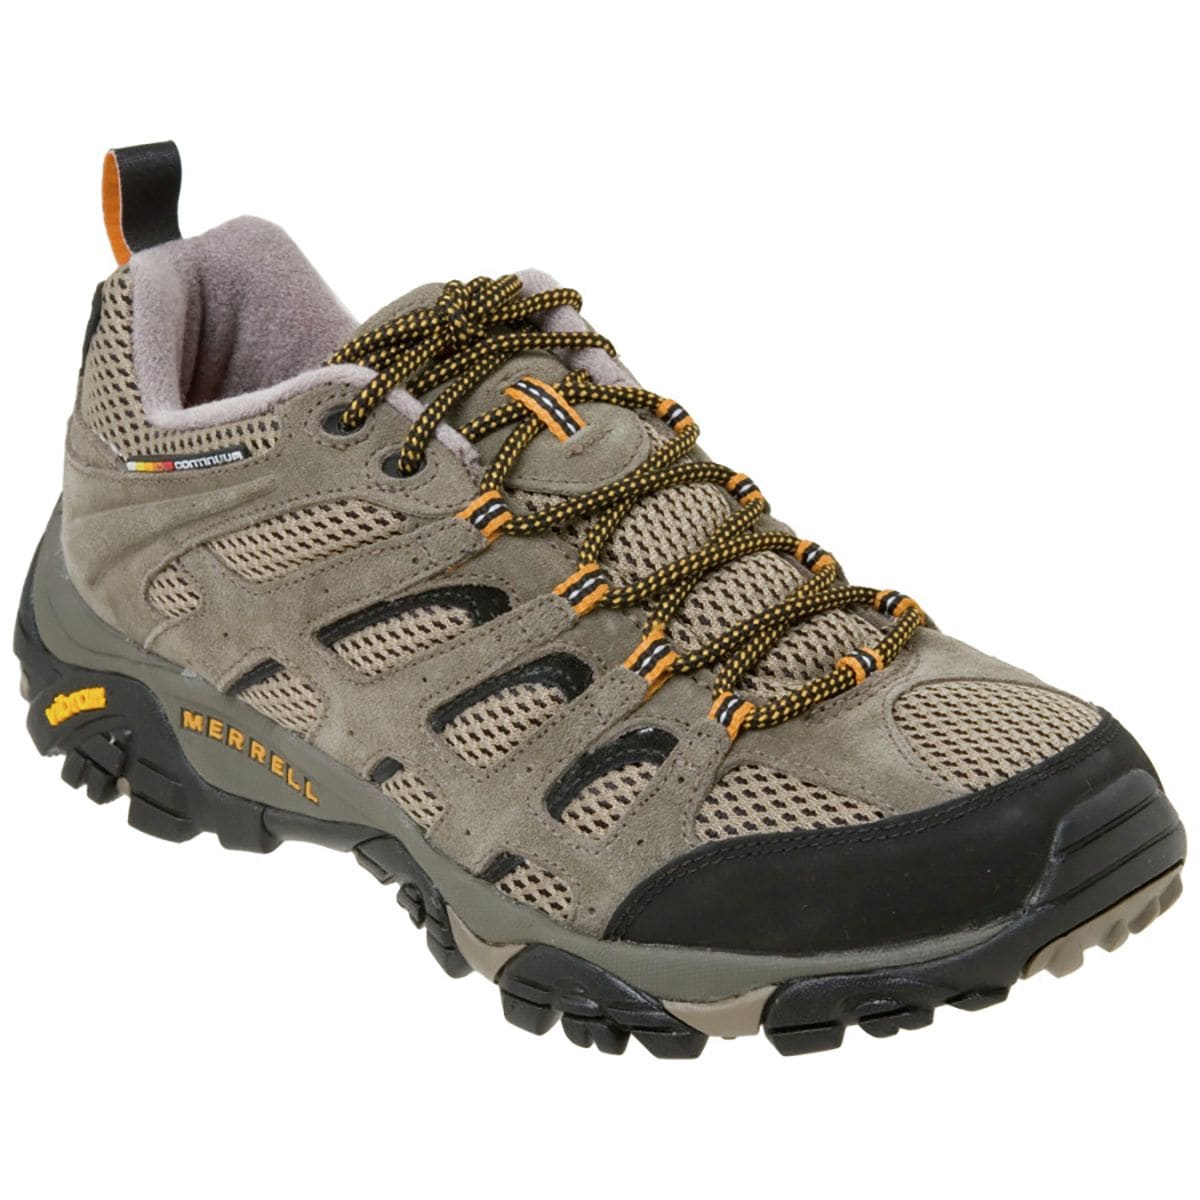 Merrell Moab Ventilator Hiking Shoe - Men's | eBay